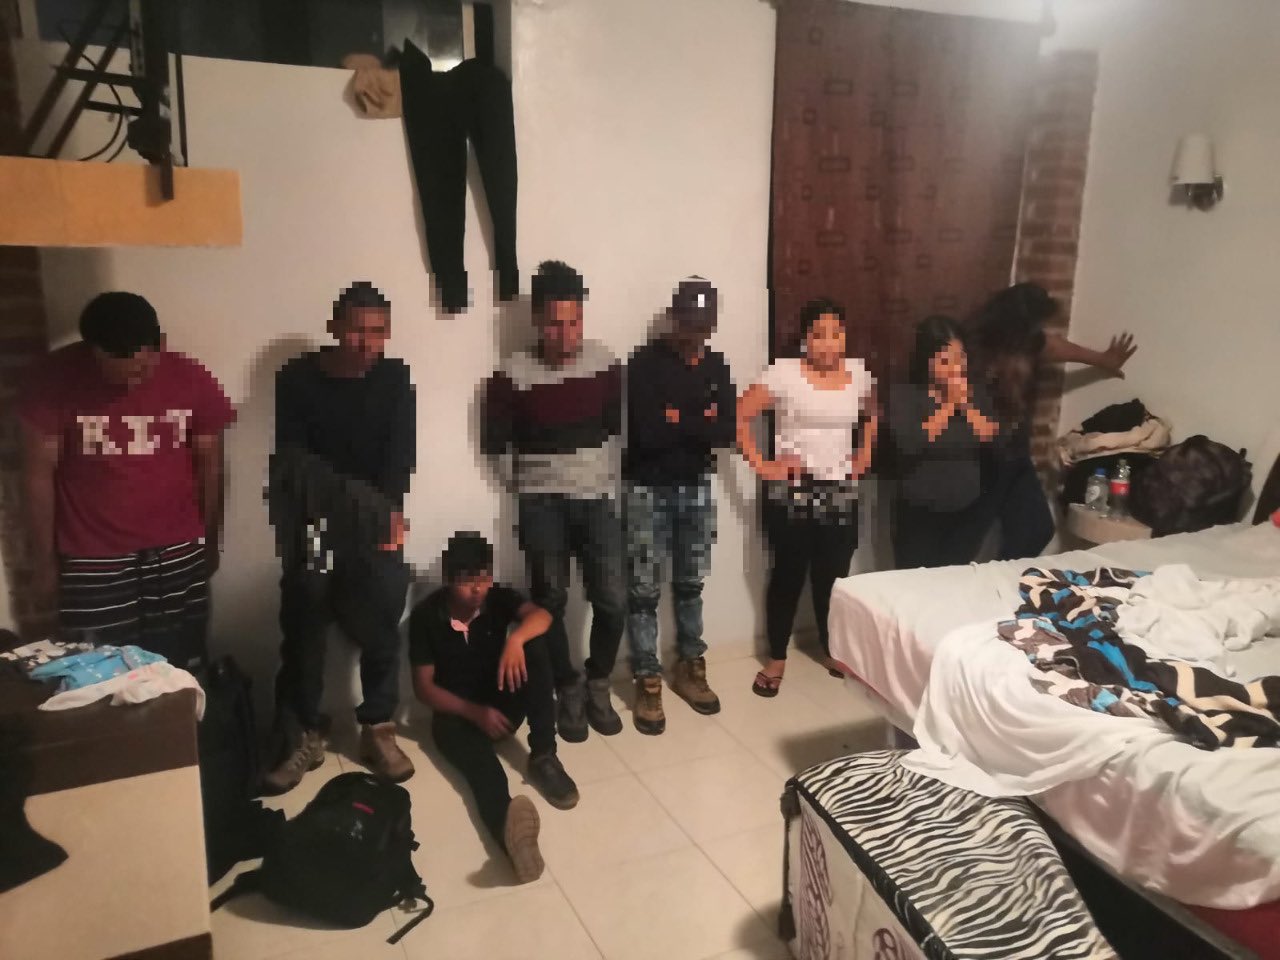 79 migrantes hacinados son encontrados en hotel del EdoMex